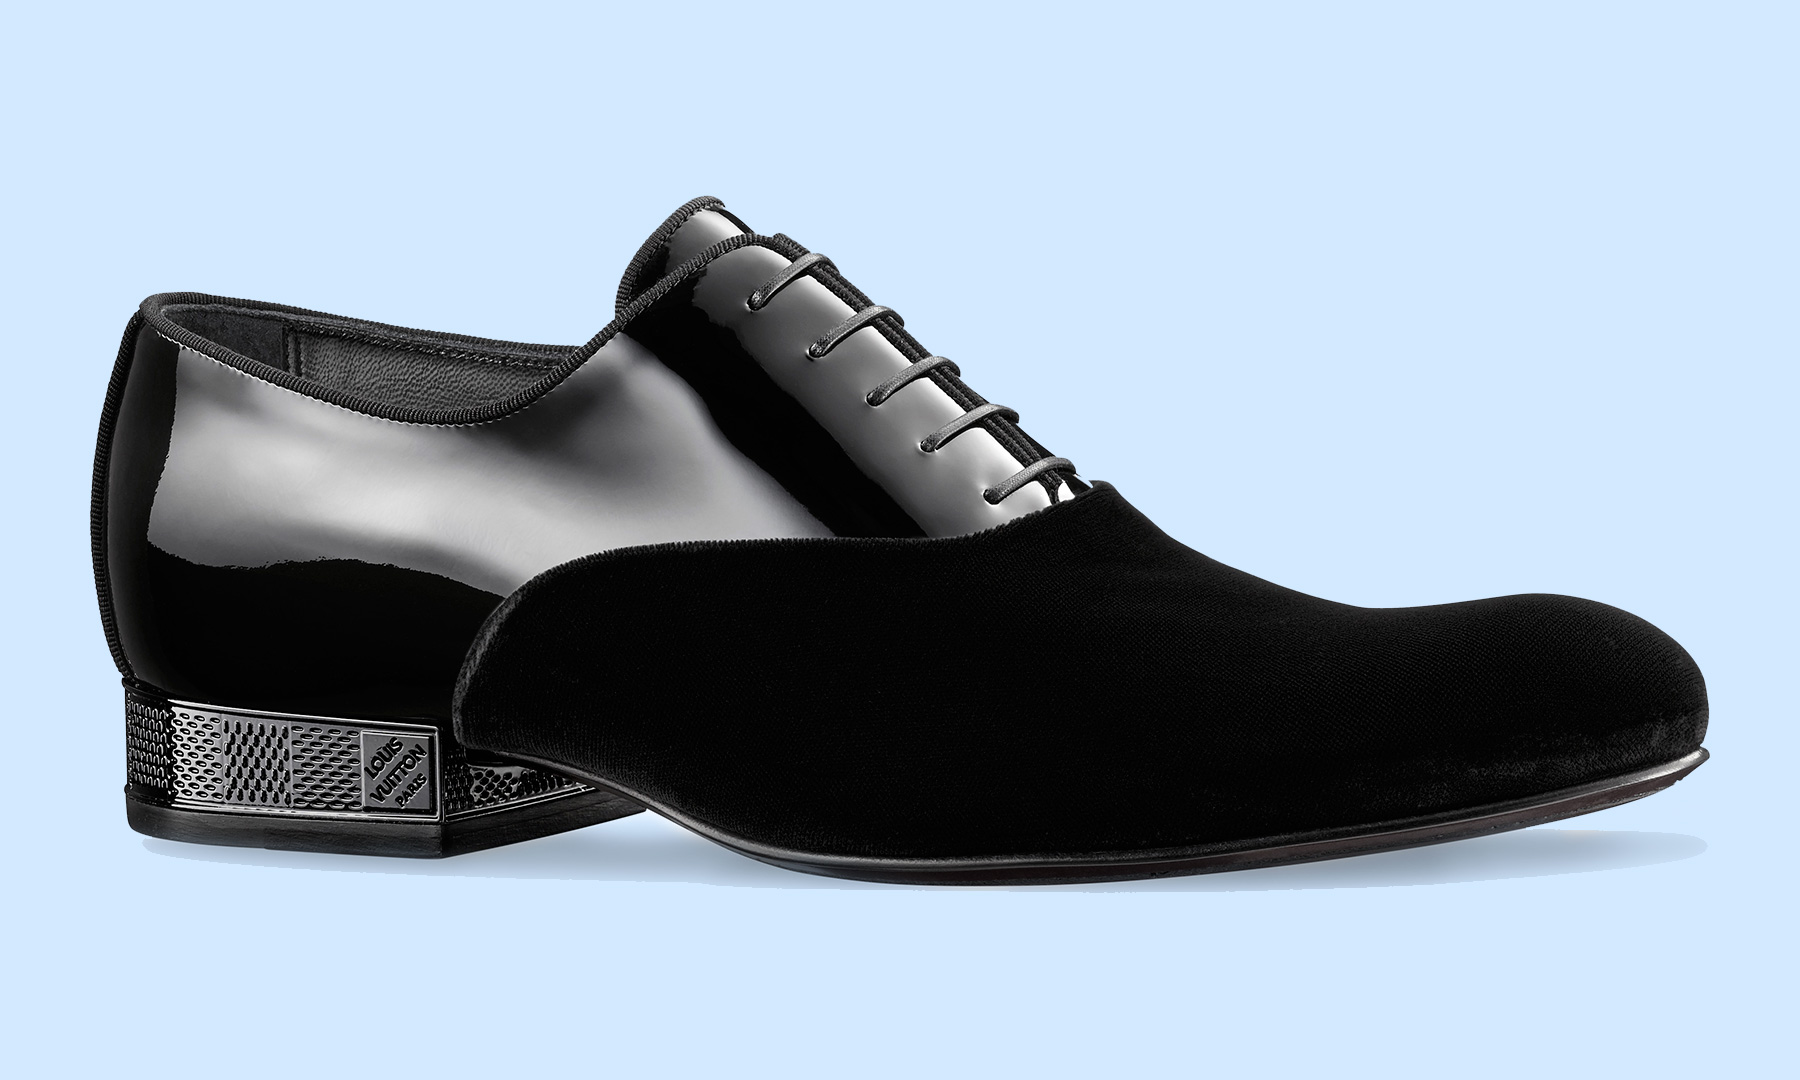 Louis Vuitton Patent Leather Shoes for Men